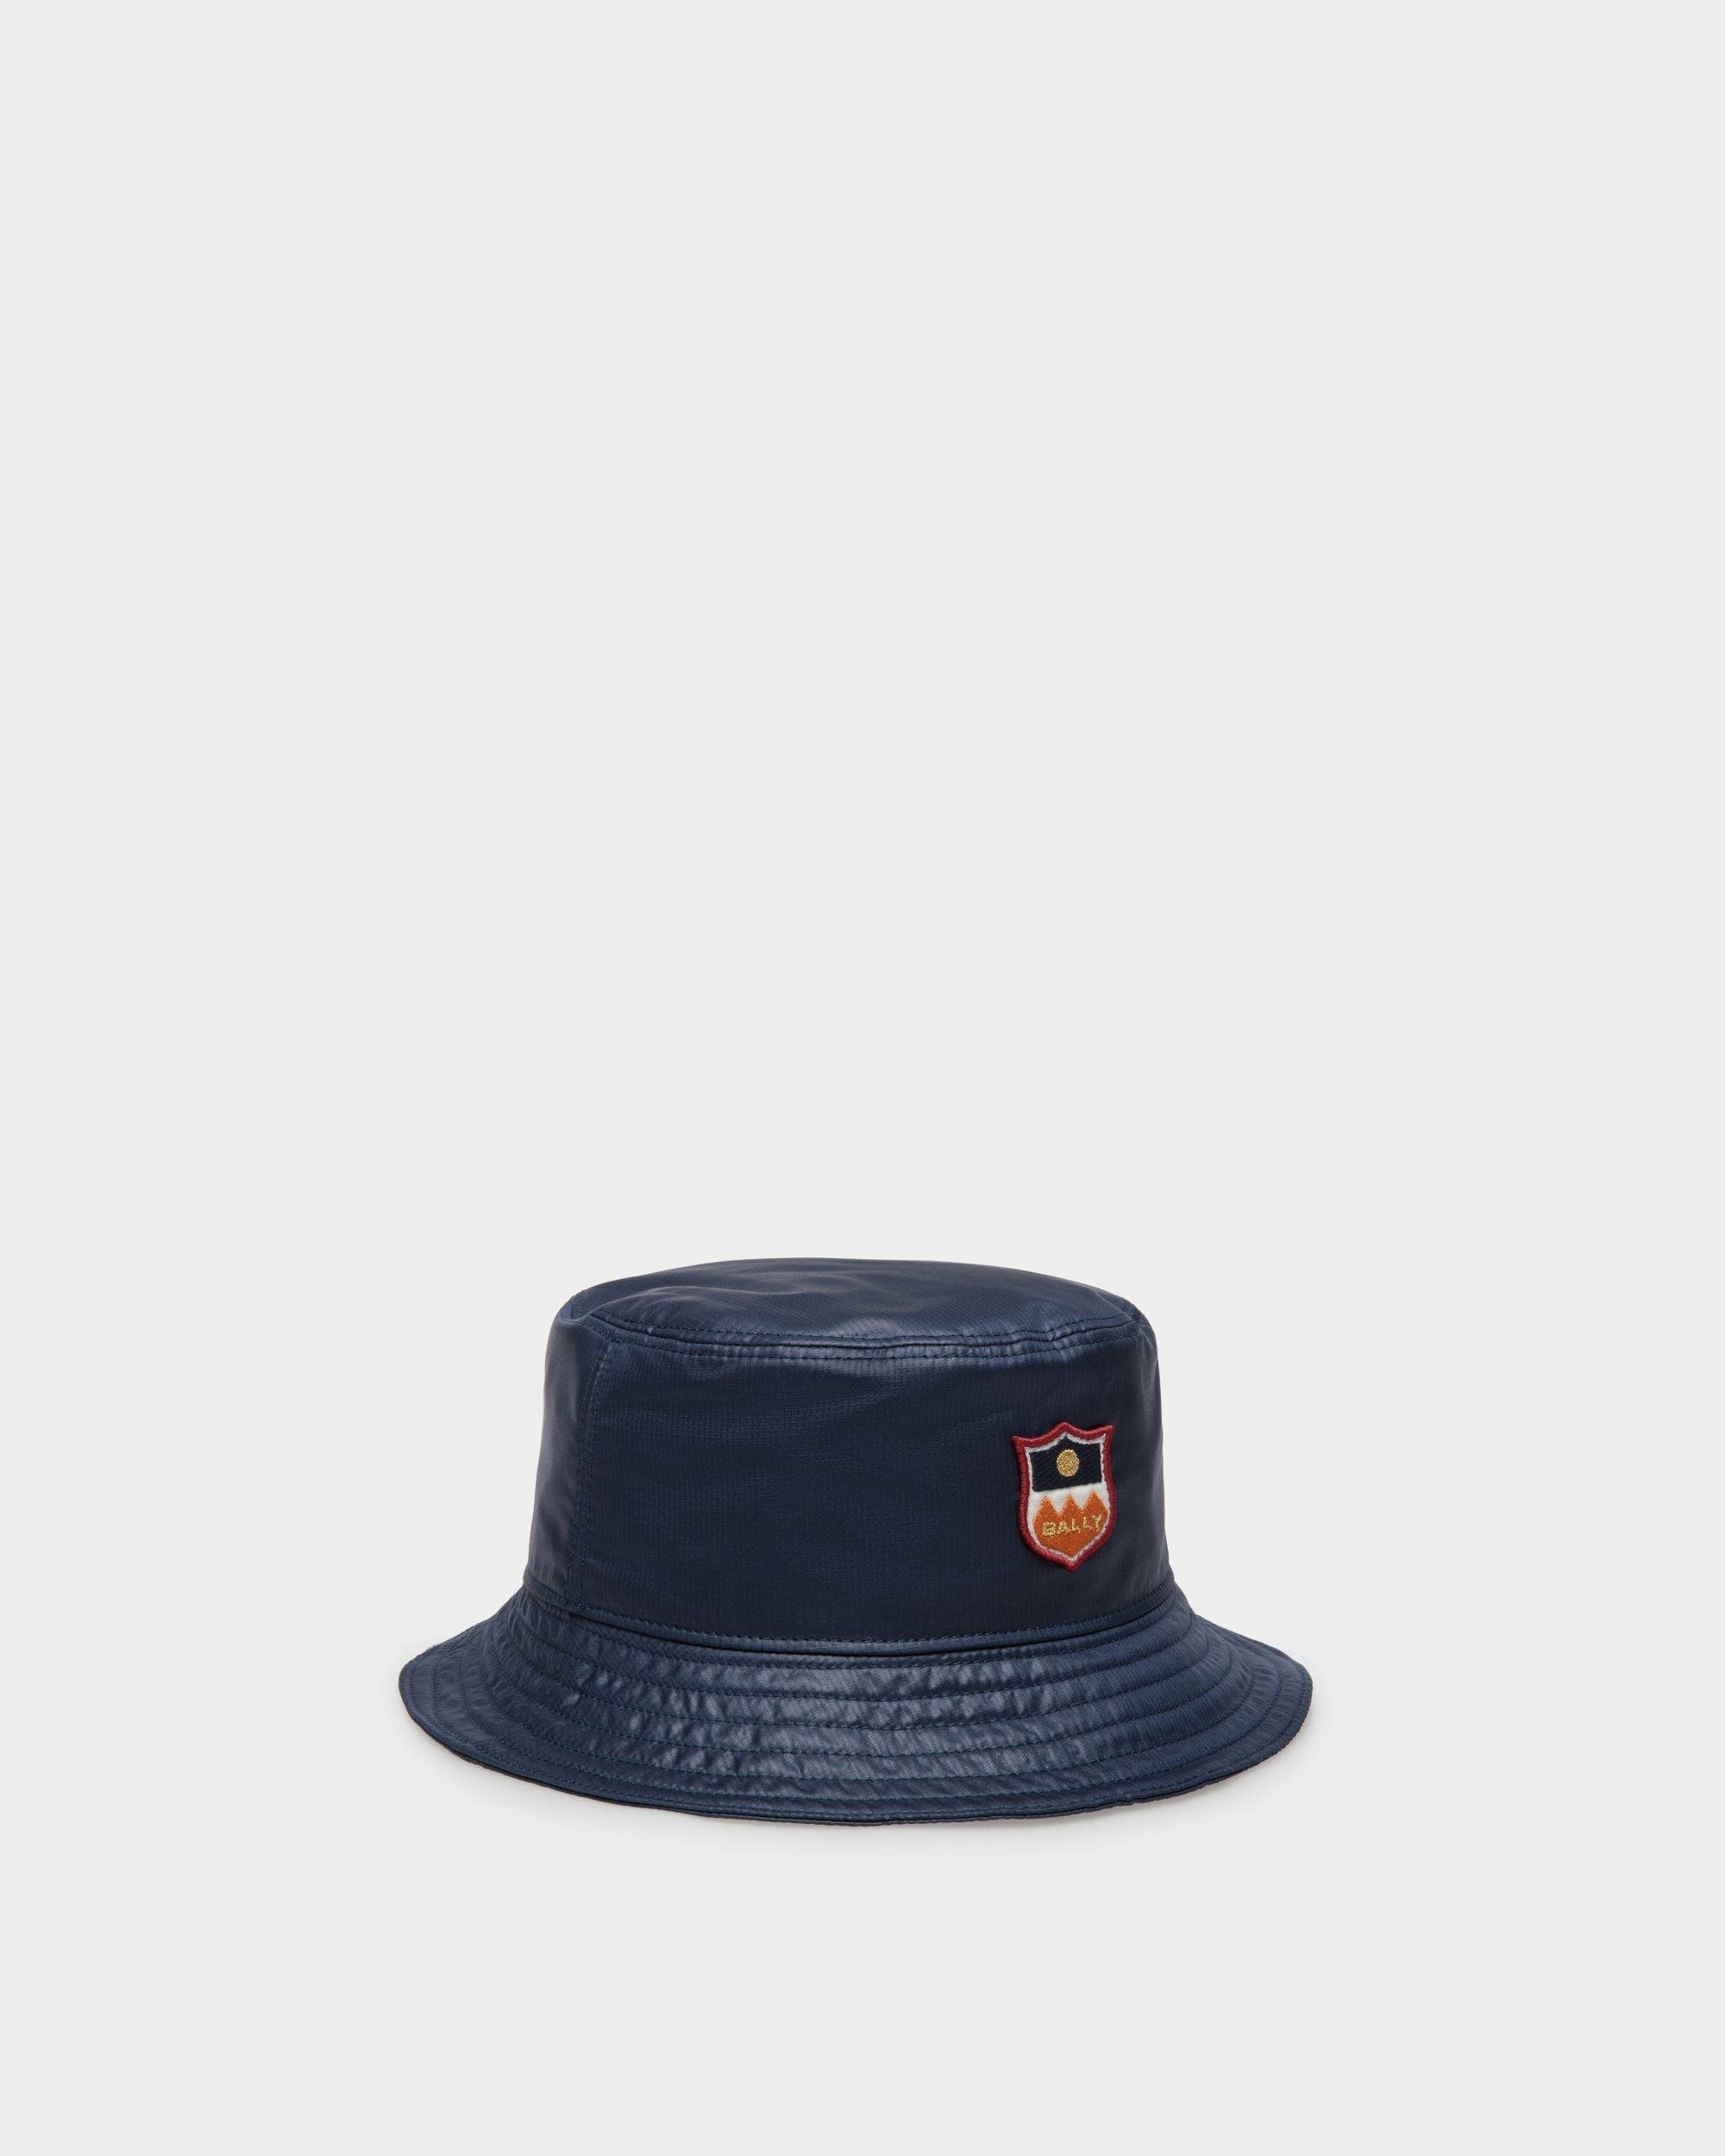 Men's Men's Bucket Hat in Navy Blue Technical Fabric | Bally | Still Life Front